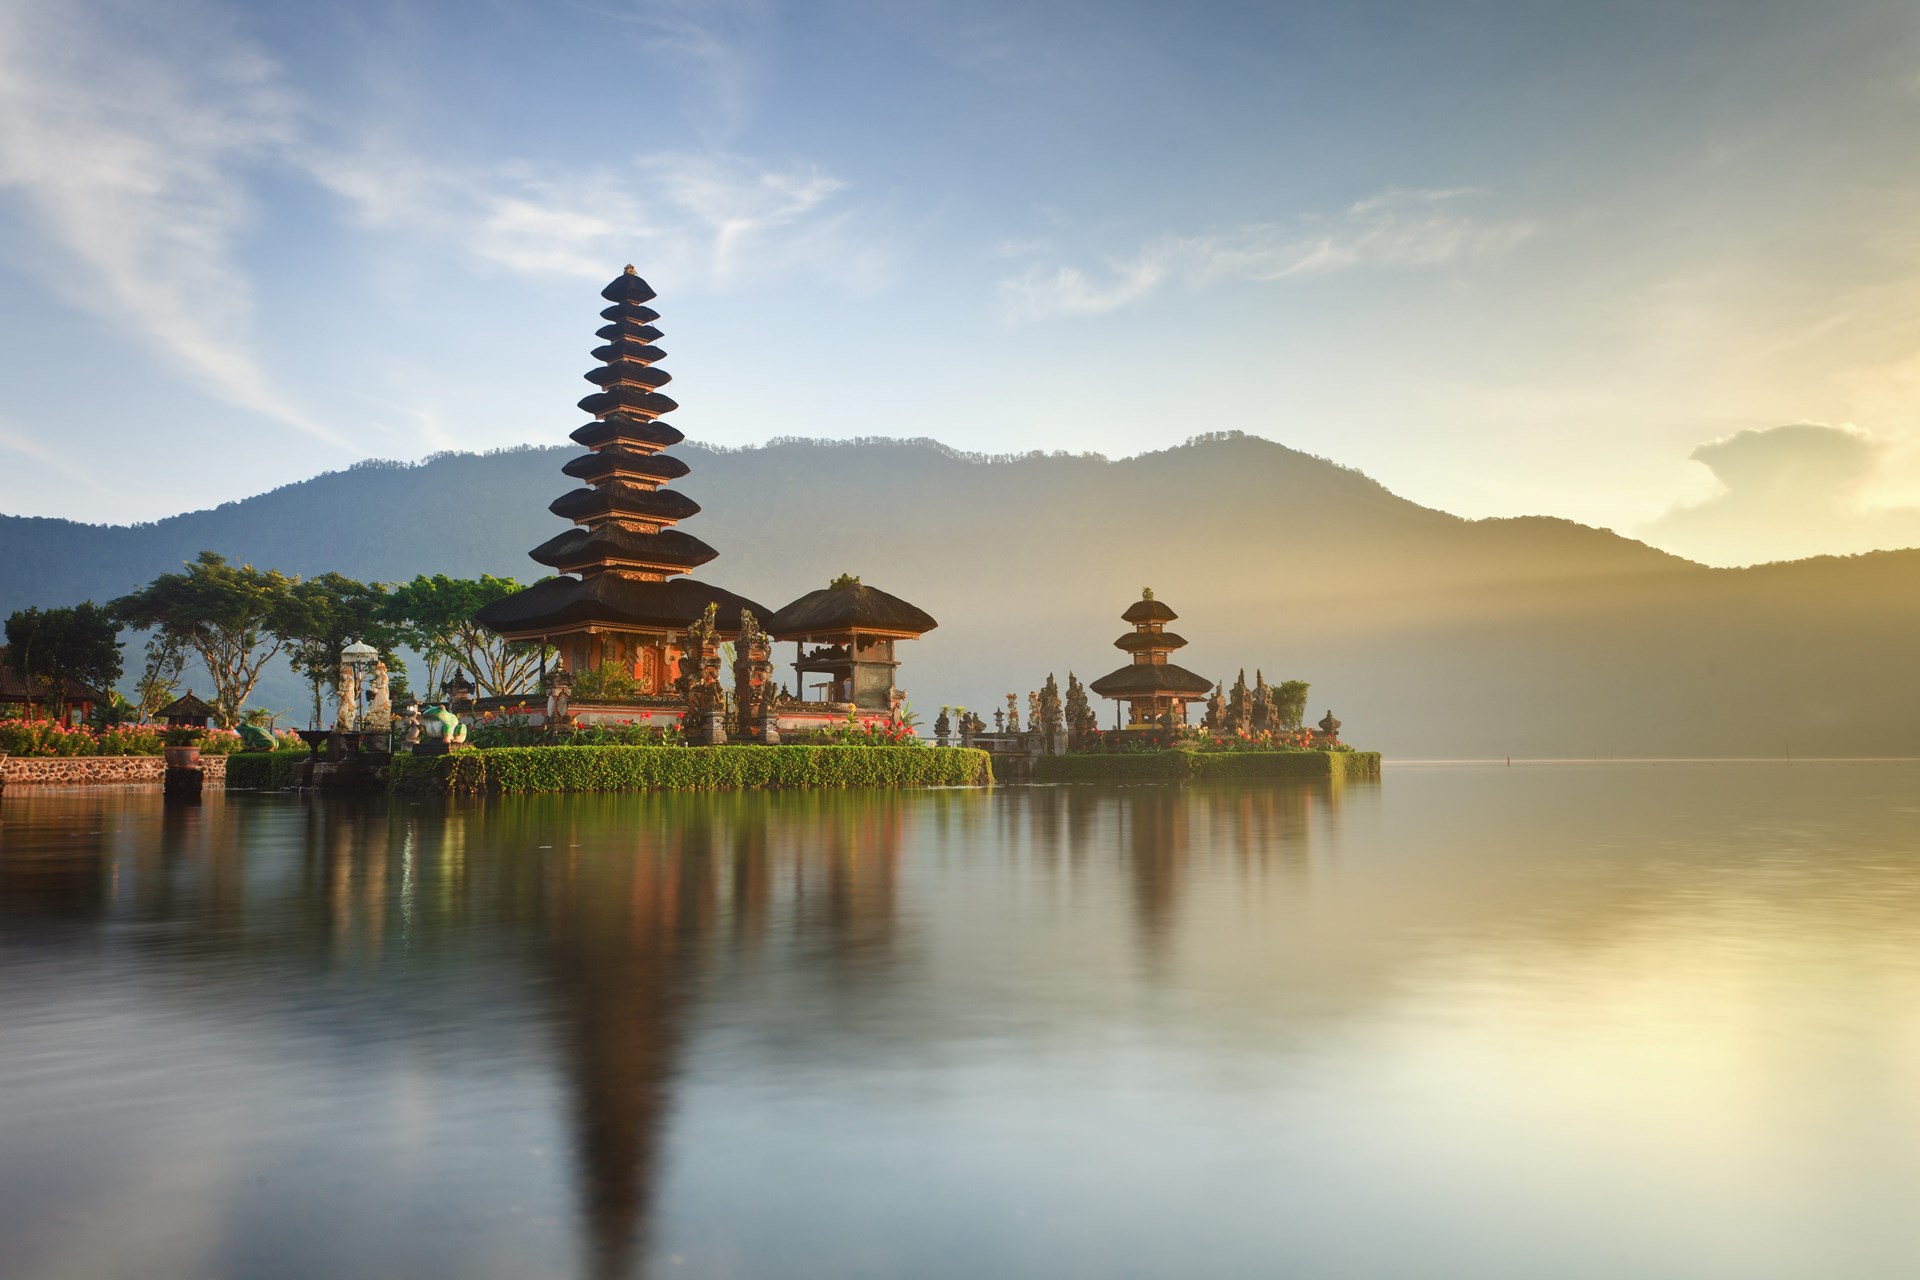 Rondreis Bali  Bali  op z n best incl vliegreis TUI